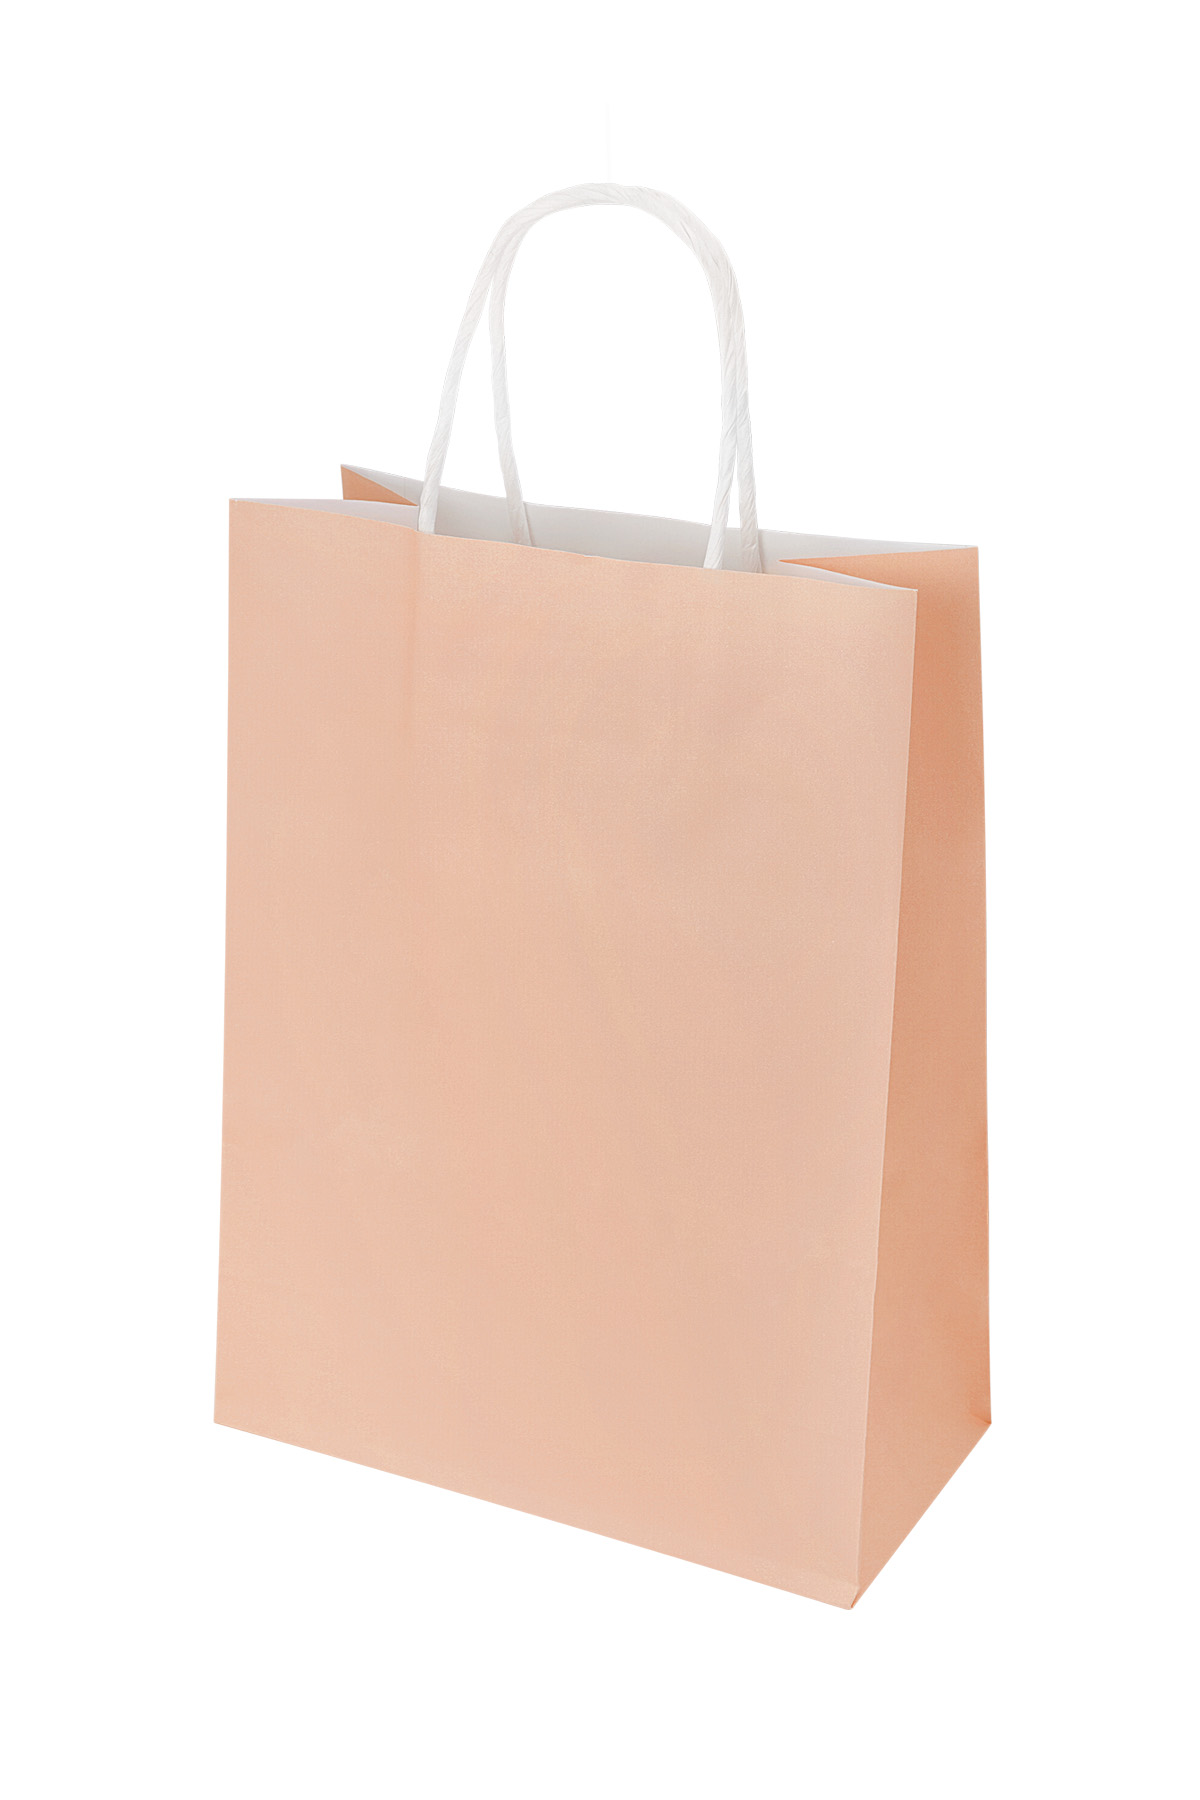 Bags plain 50 pieces large - pink Paper